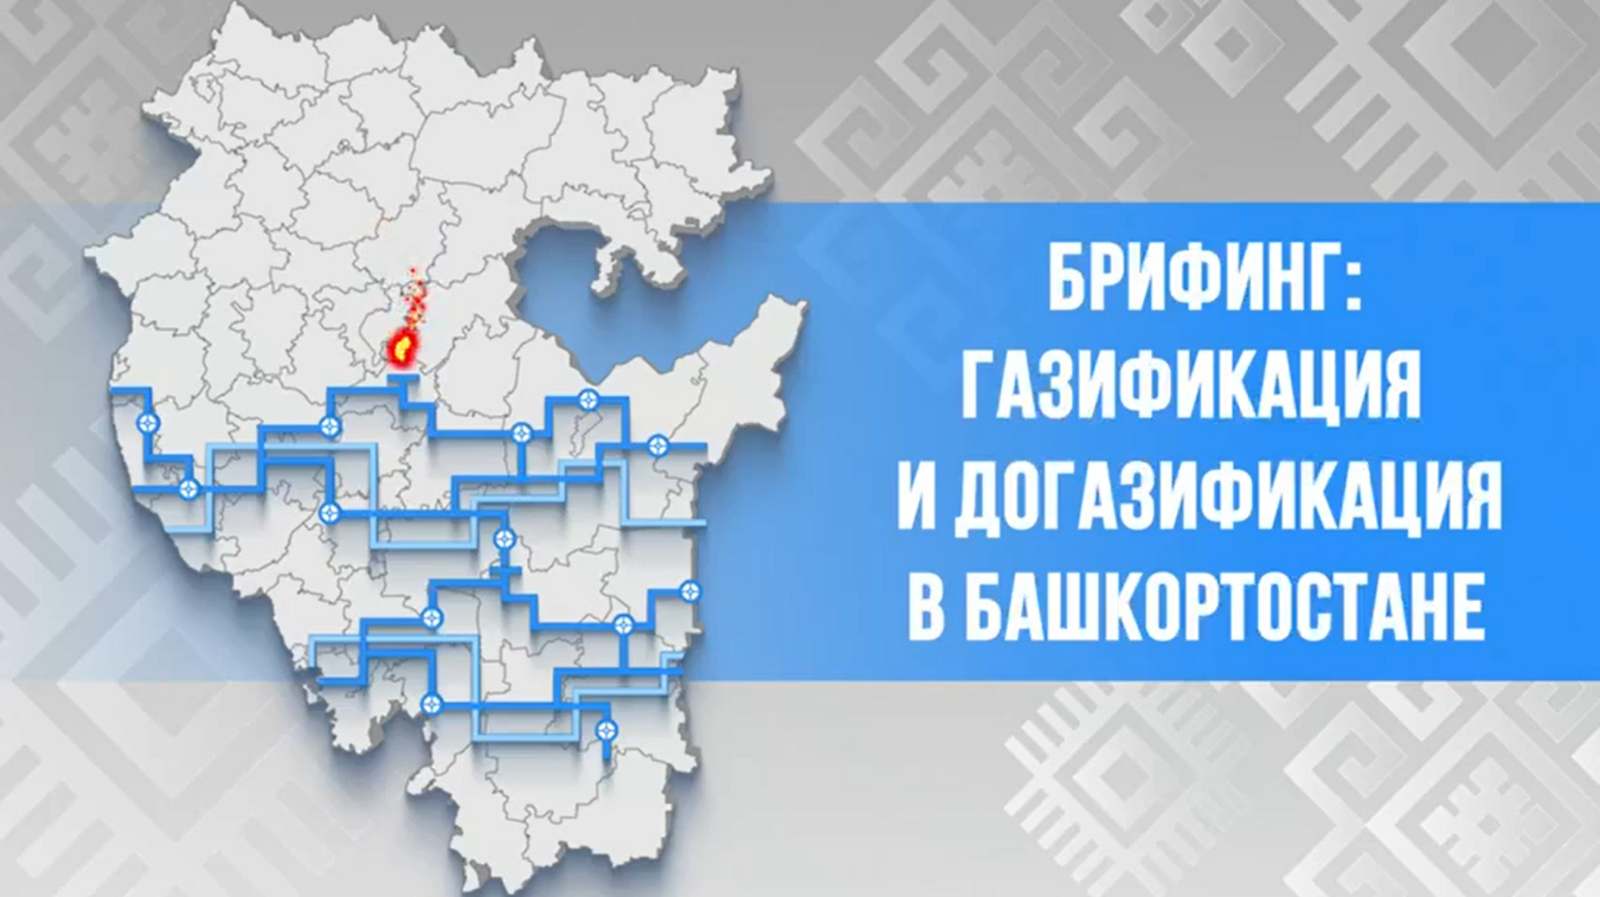 Если есть вопросы про газификацию и догазификацию в Башкортостане